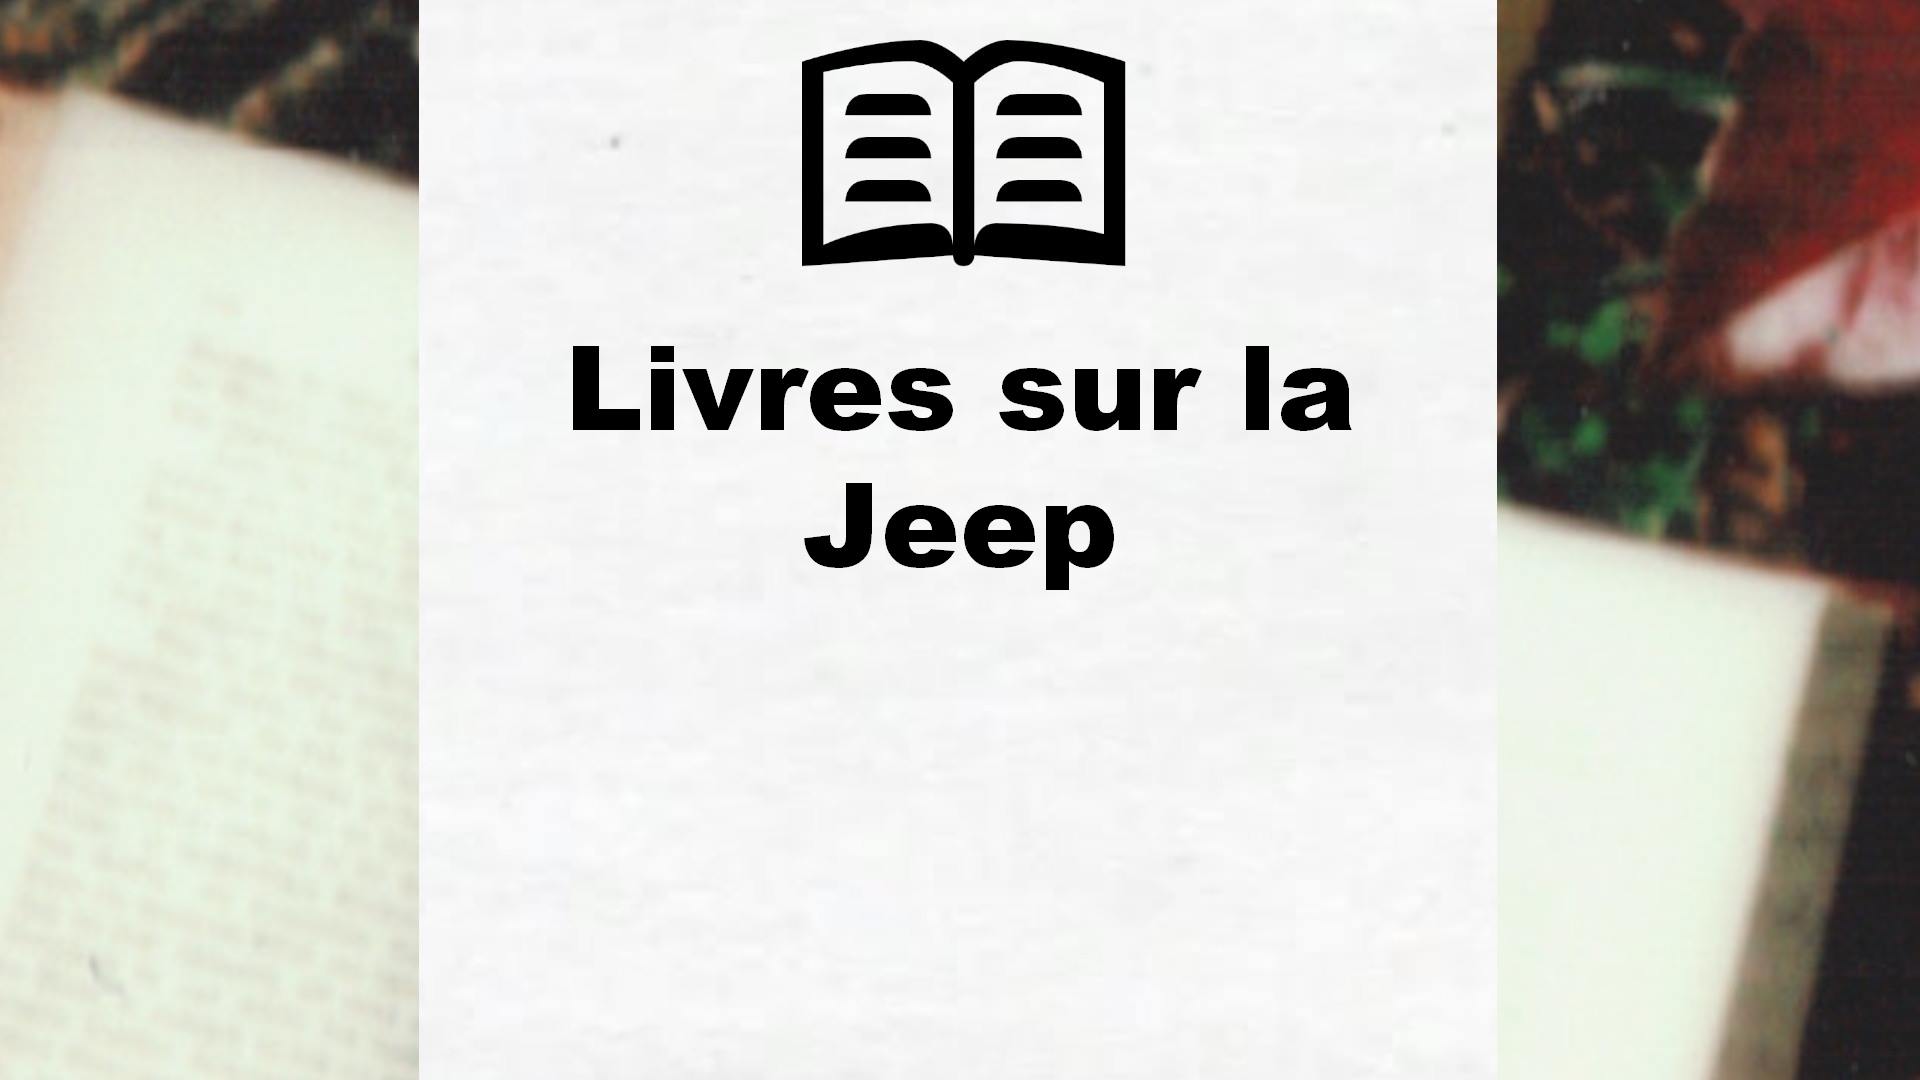 Livres sur la Jeep